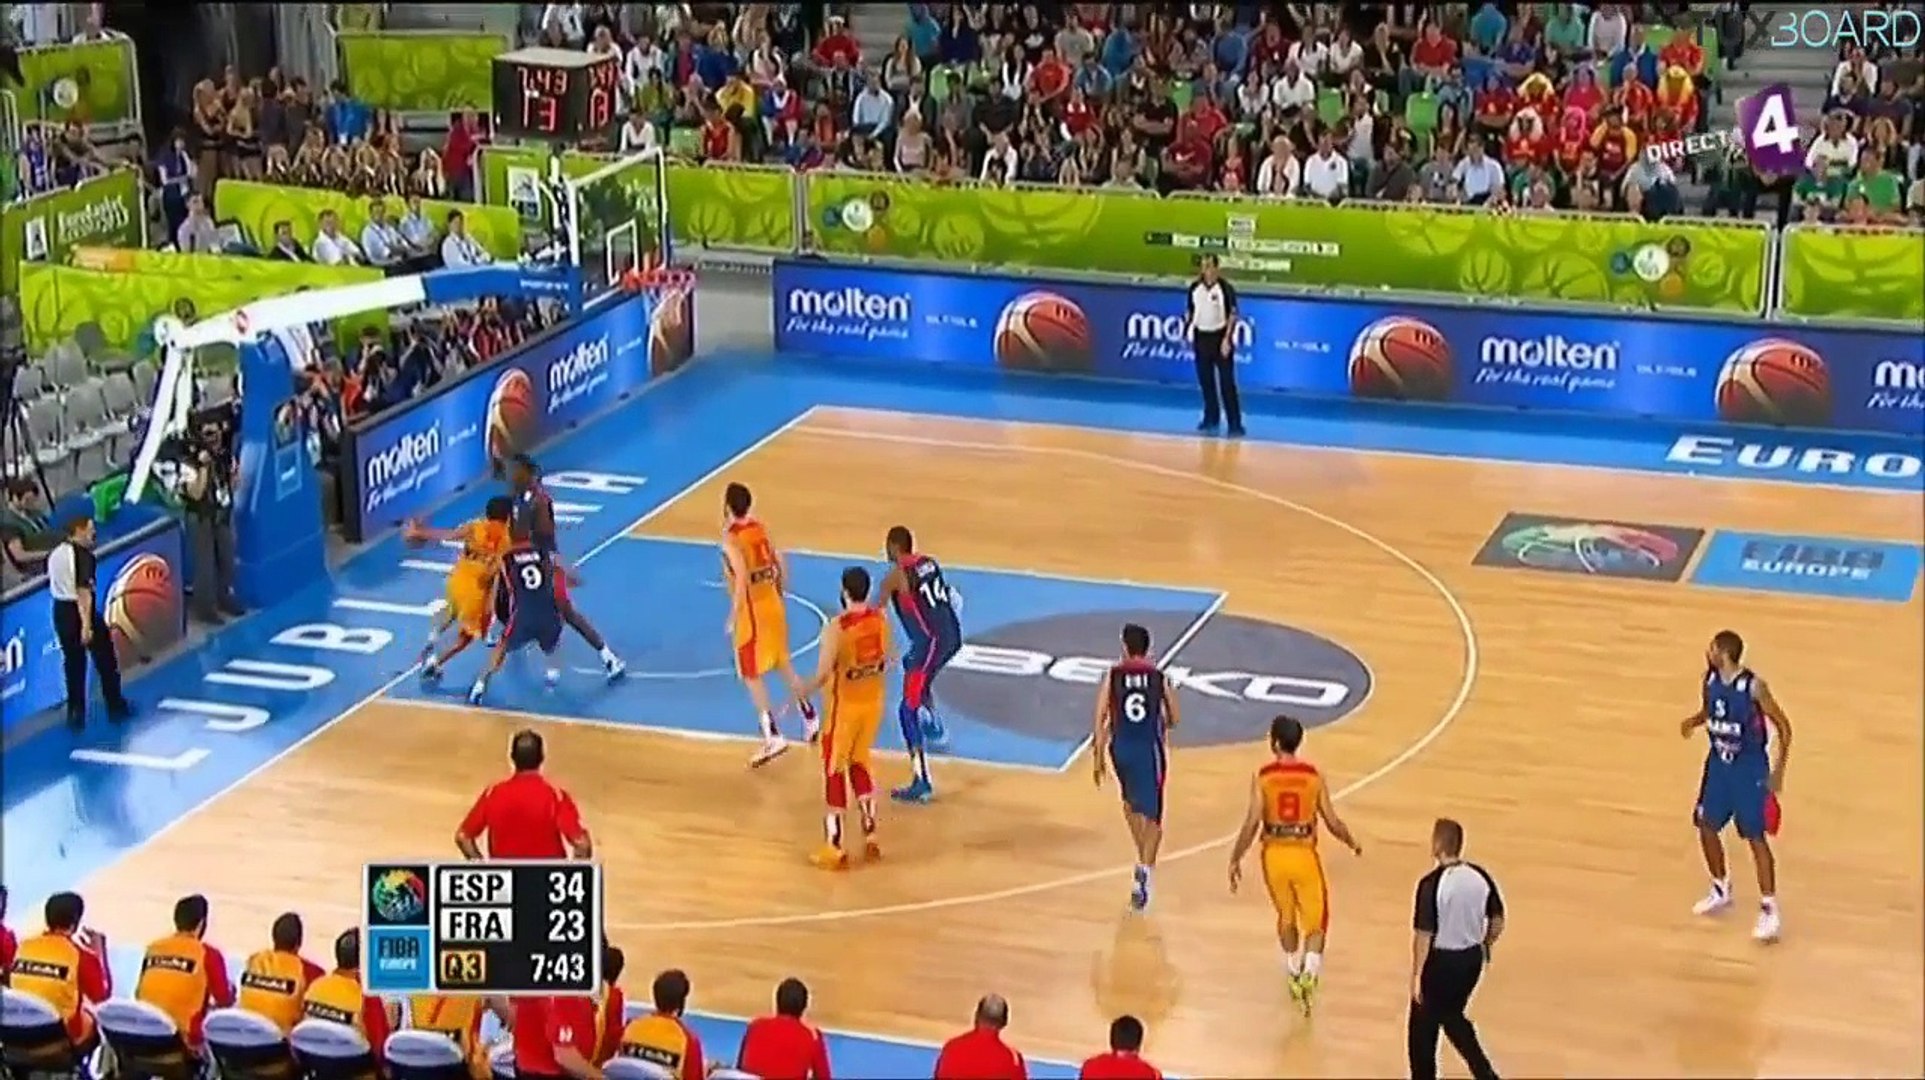 France Espagne Eurobasket 2013 (demie finale) - Vidéo Dailymotion